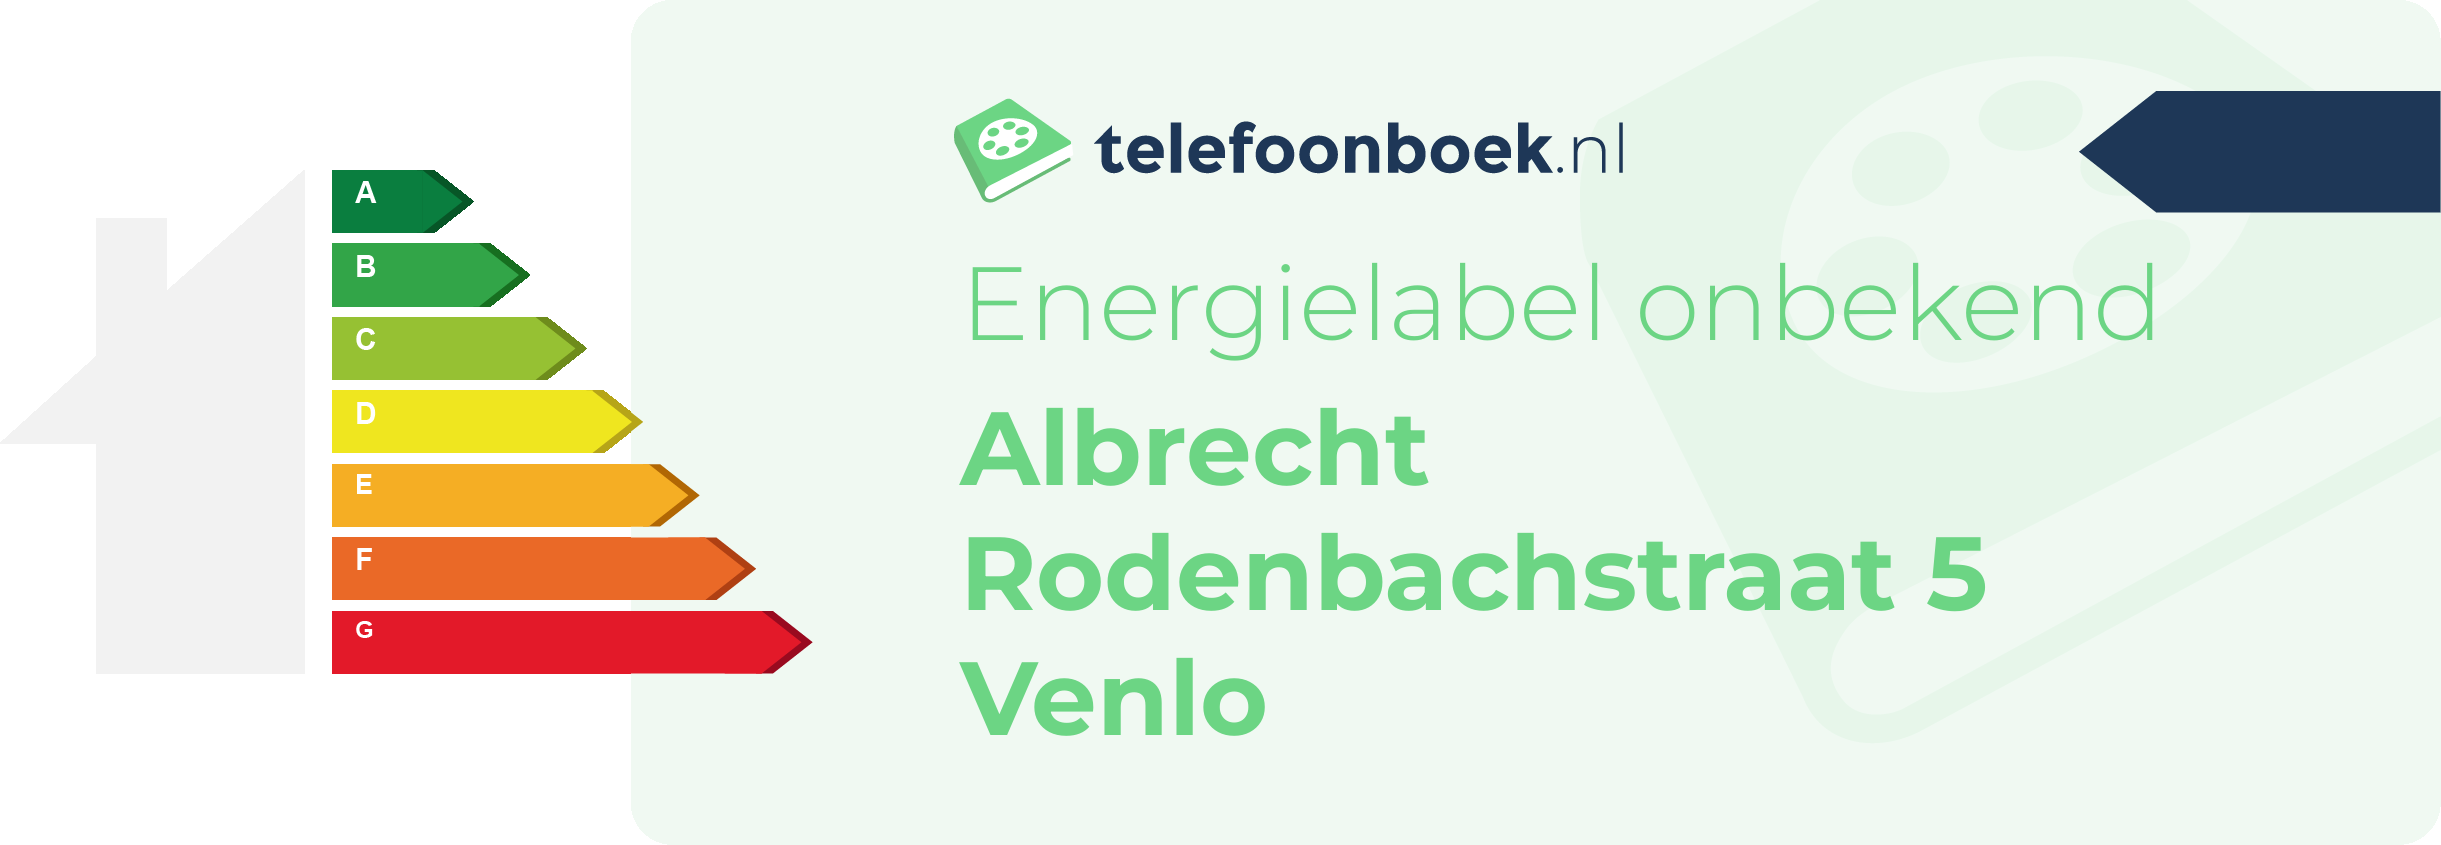 Energielabel Albrecht Rodenbachstraat 5 Venlo